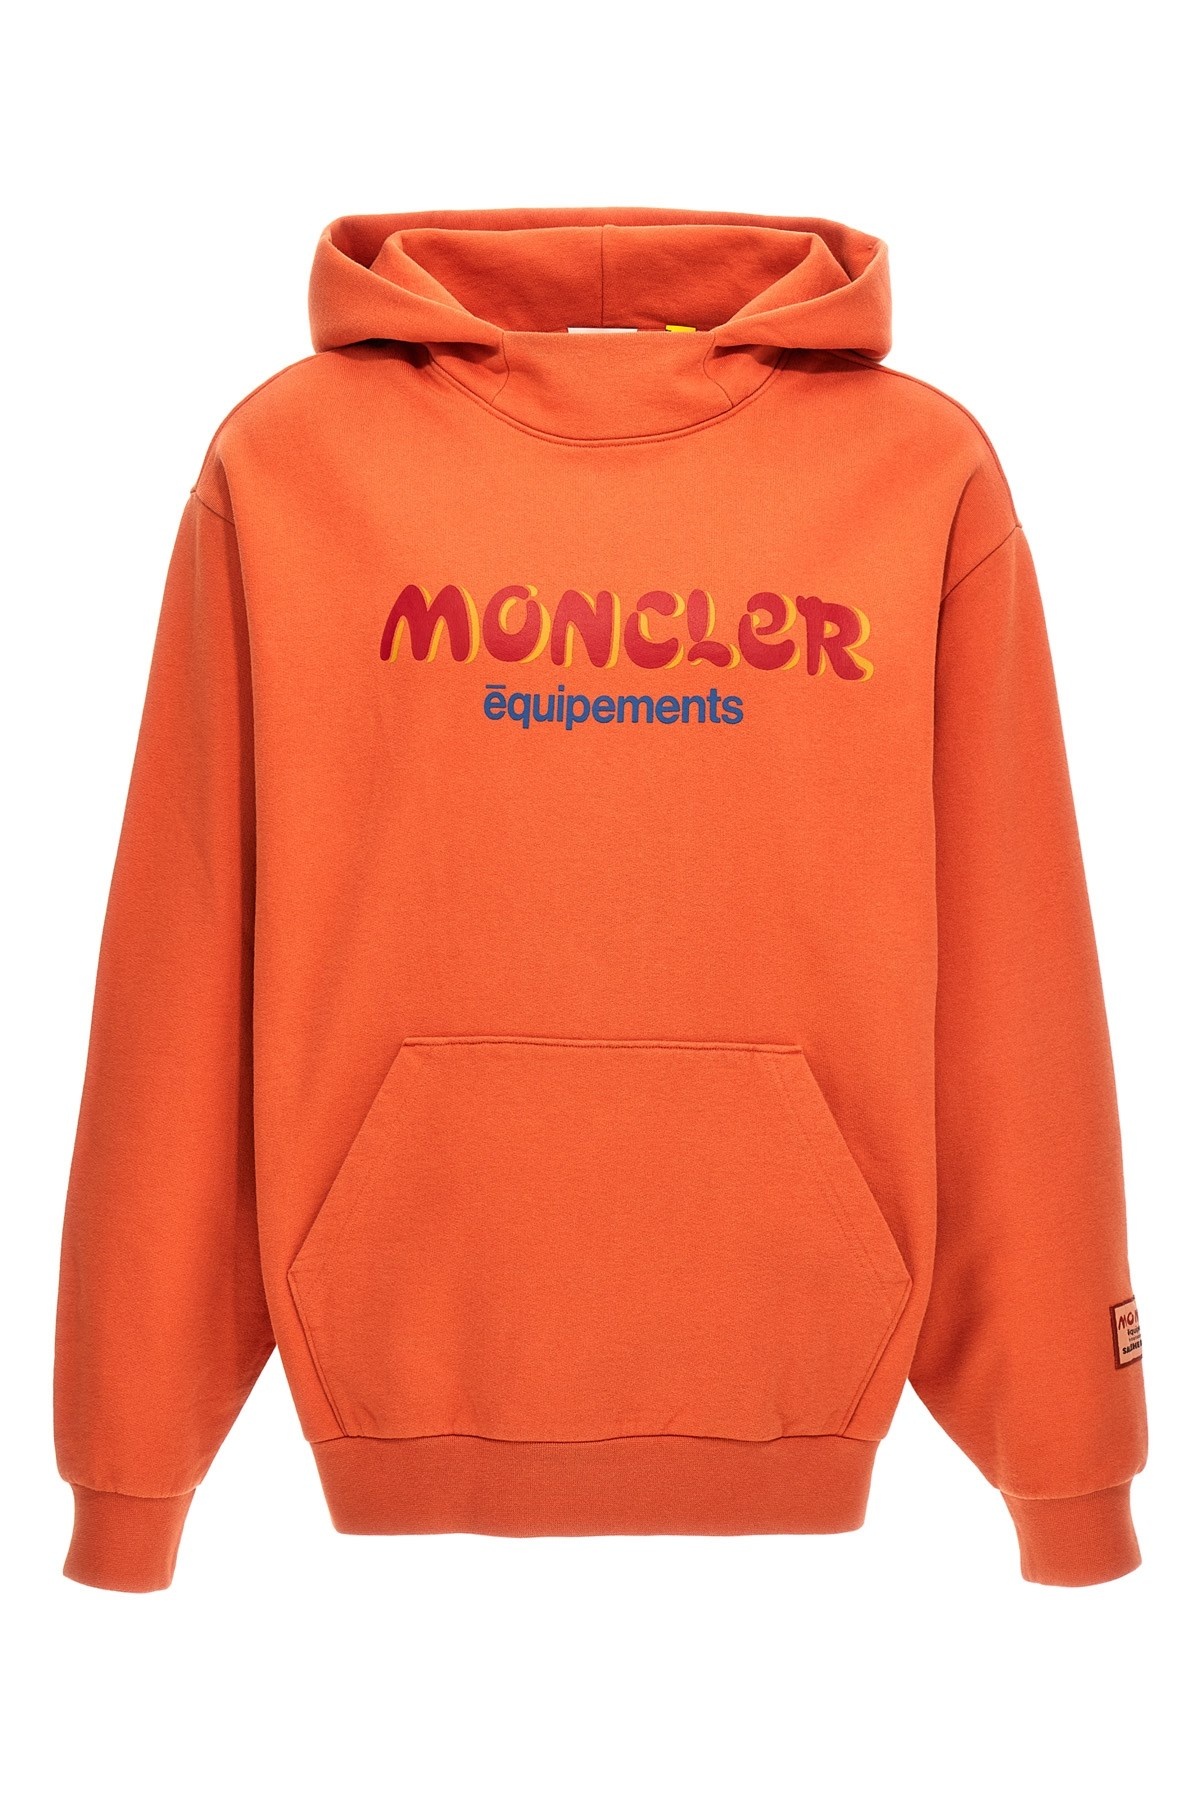 Moncler Genius Salehe Bembury hoodie - 1